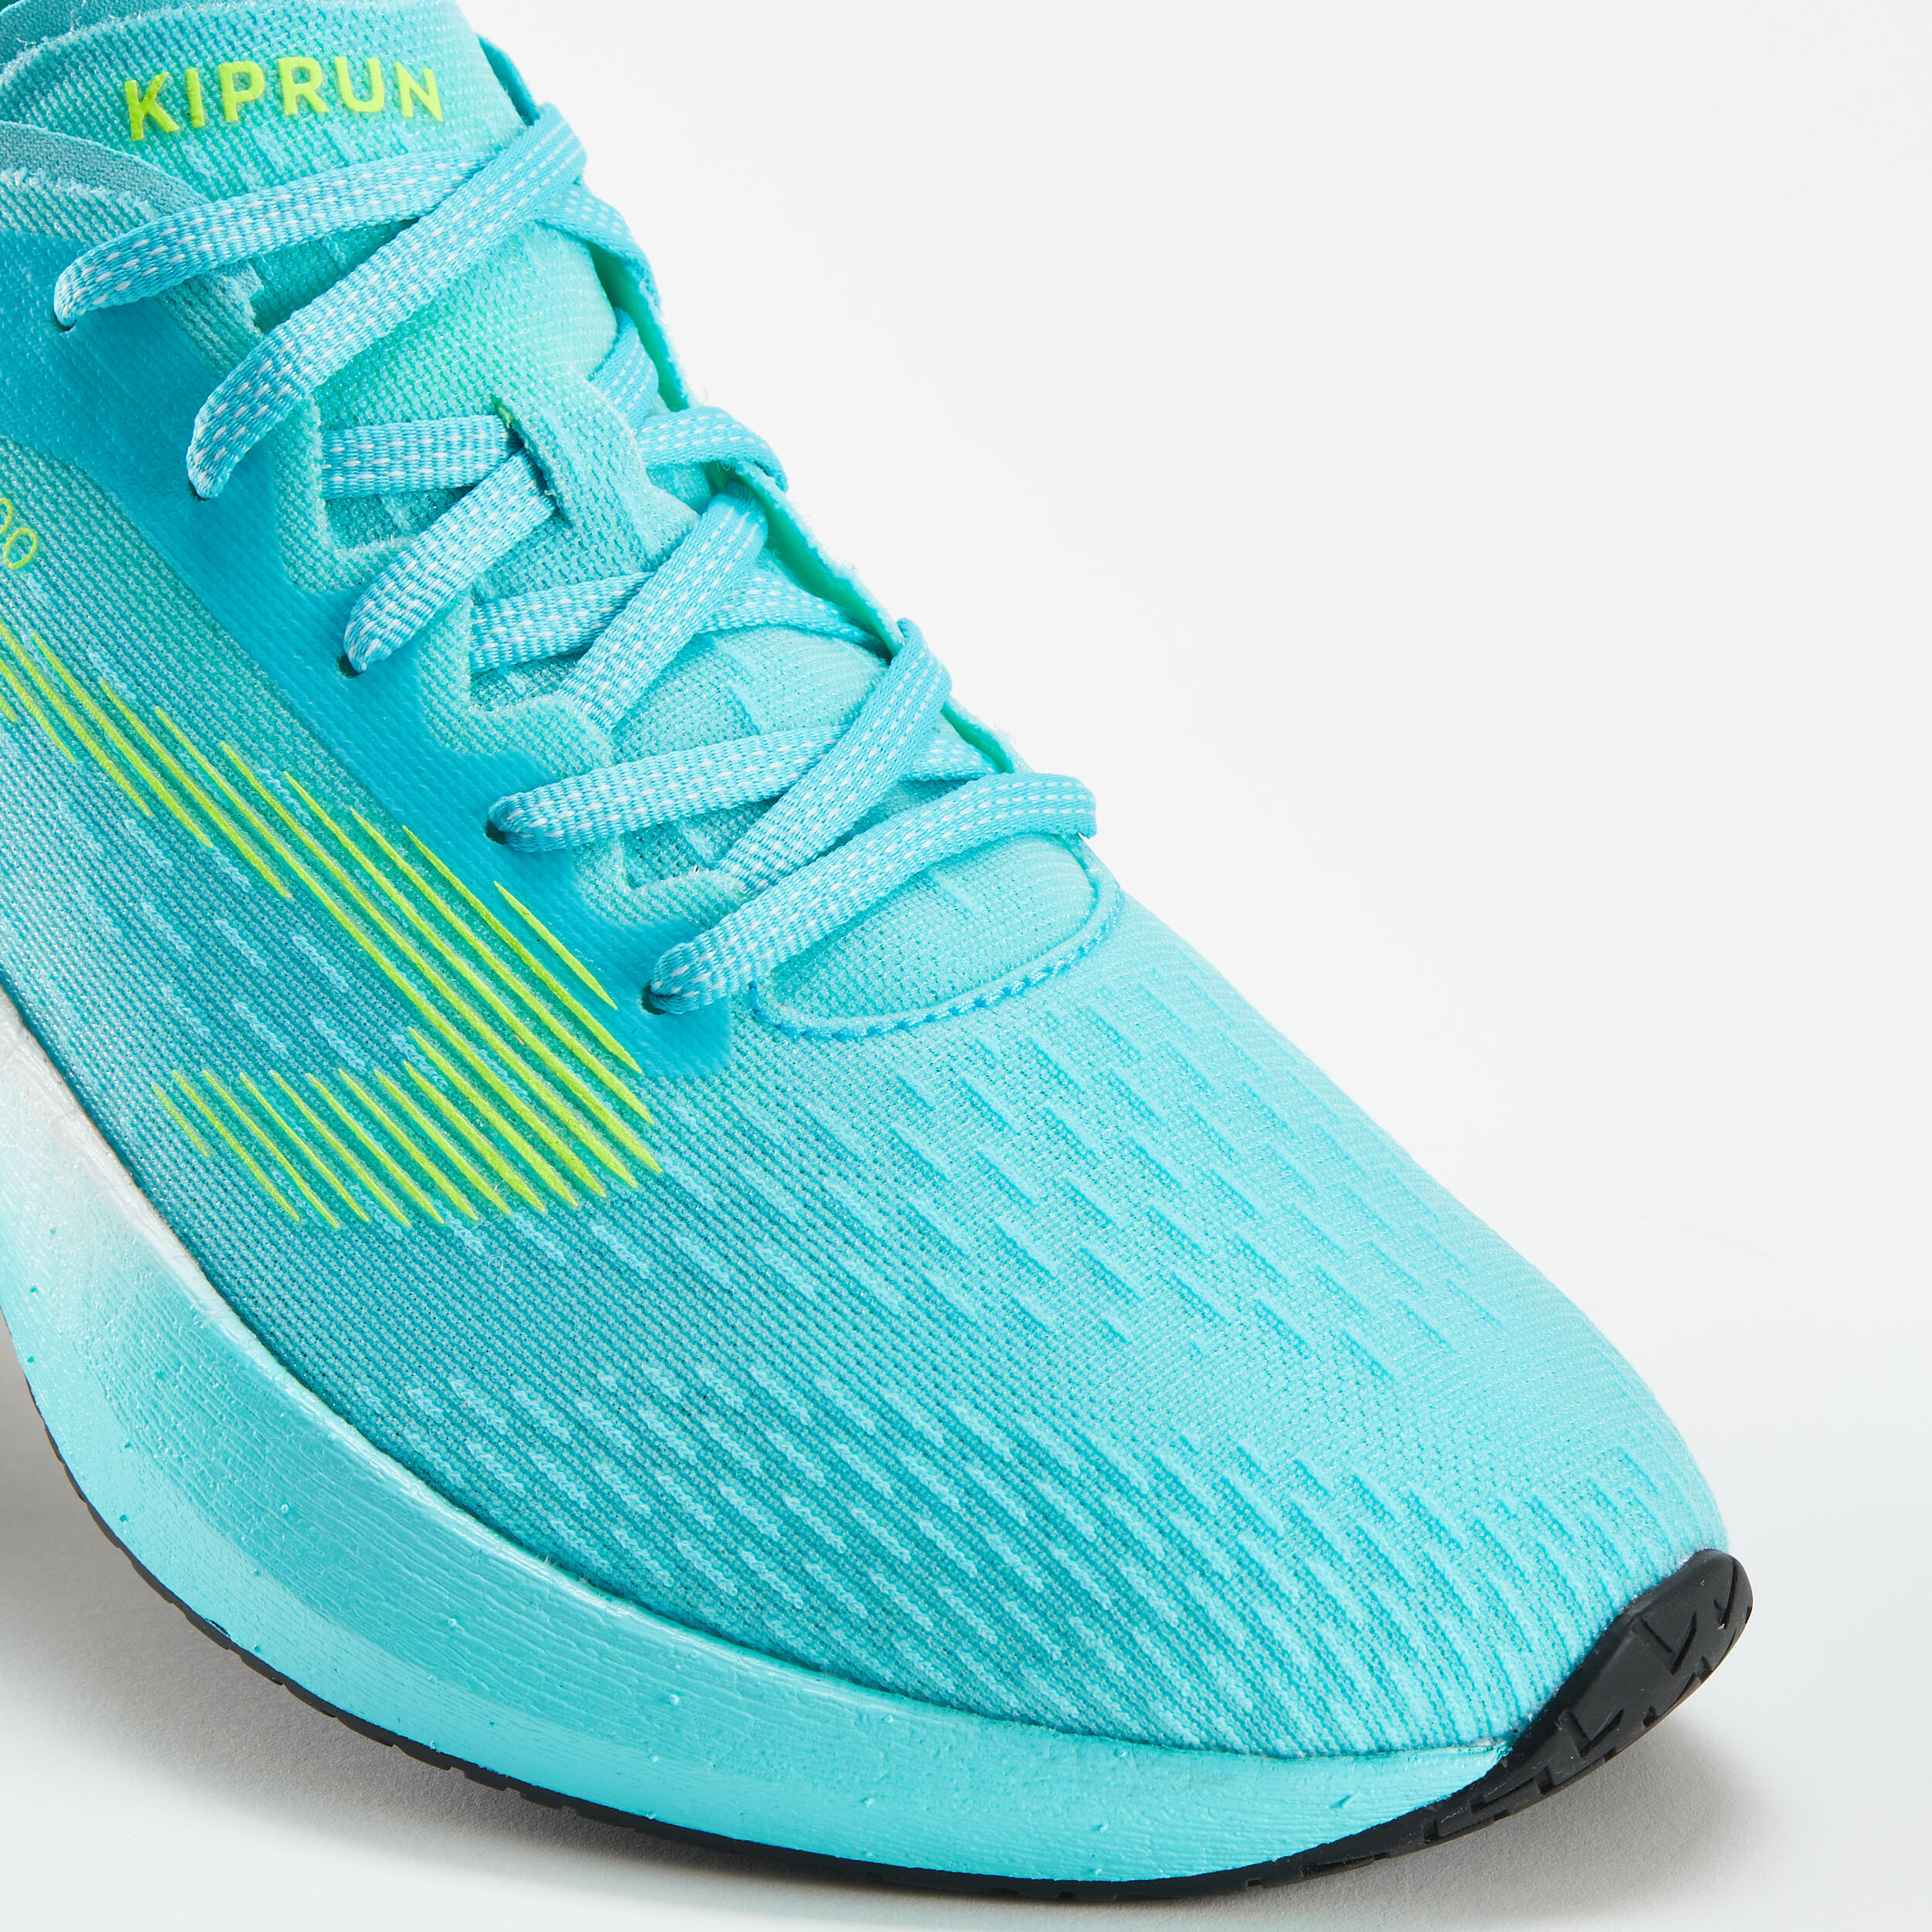 KIPRUN KD900 men's running shoes - turquoise 5/9